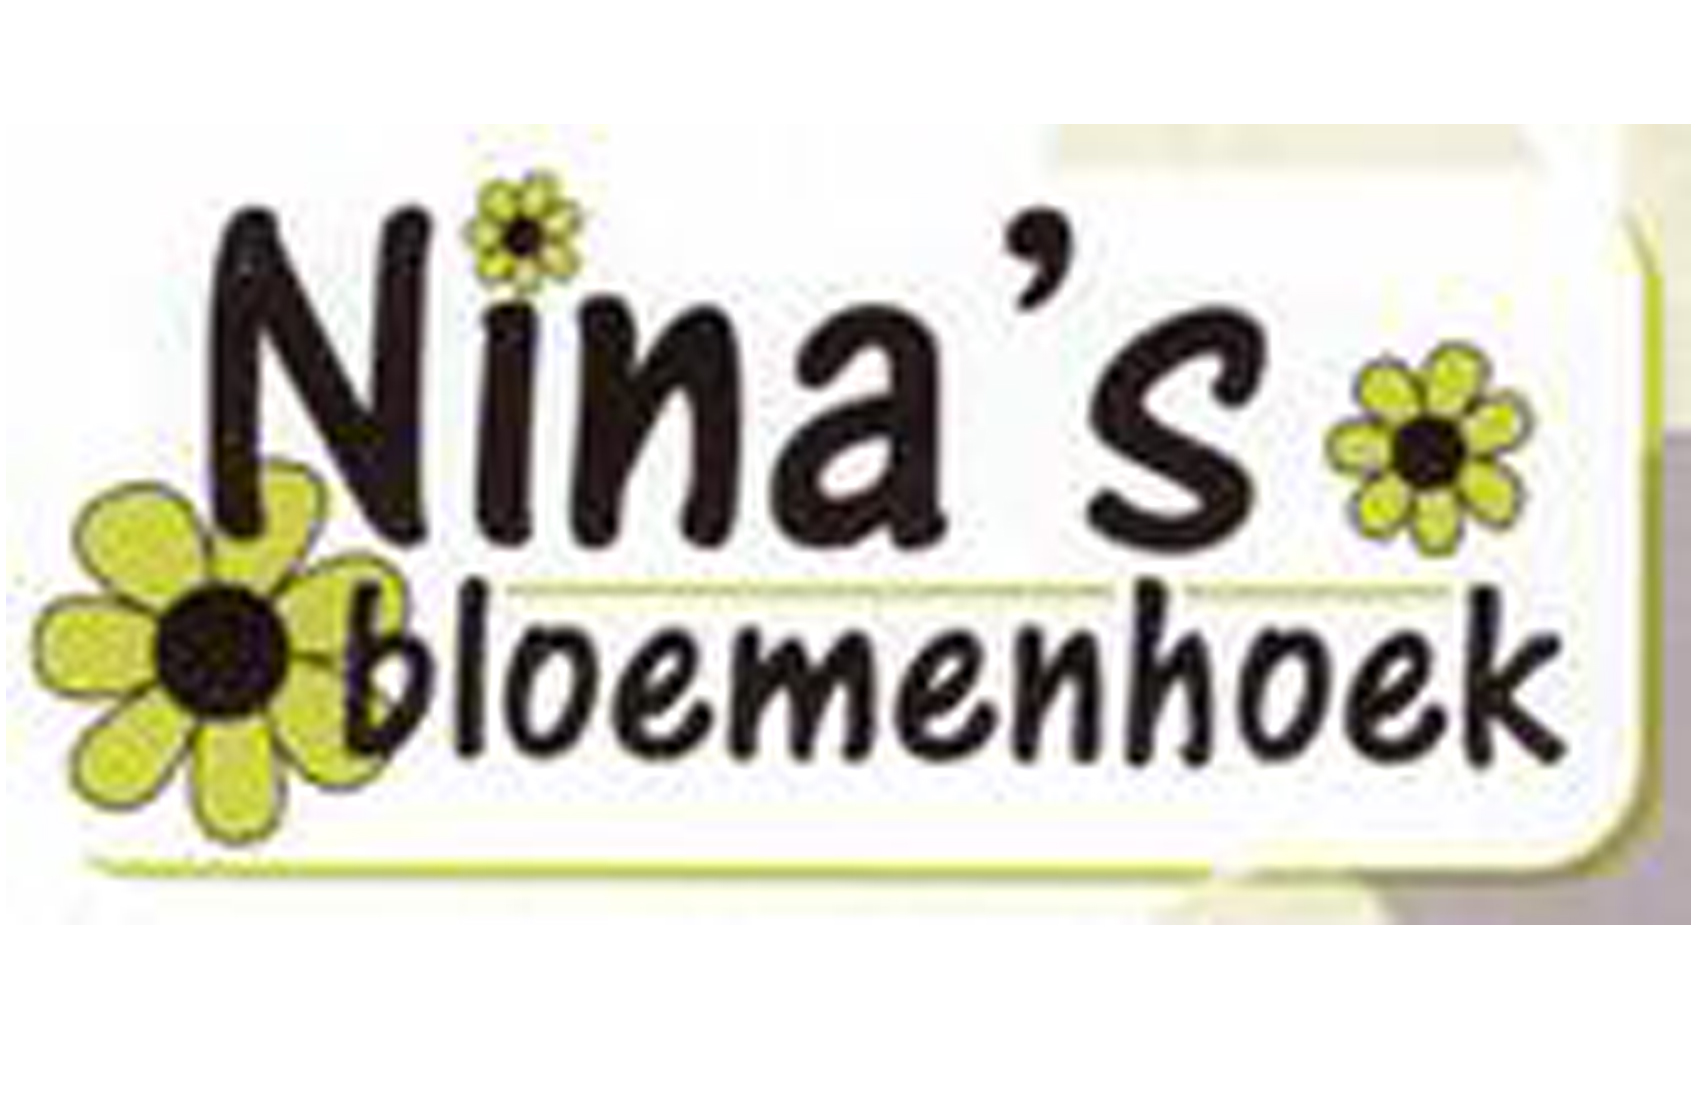 Nina's Bloemenhoek